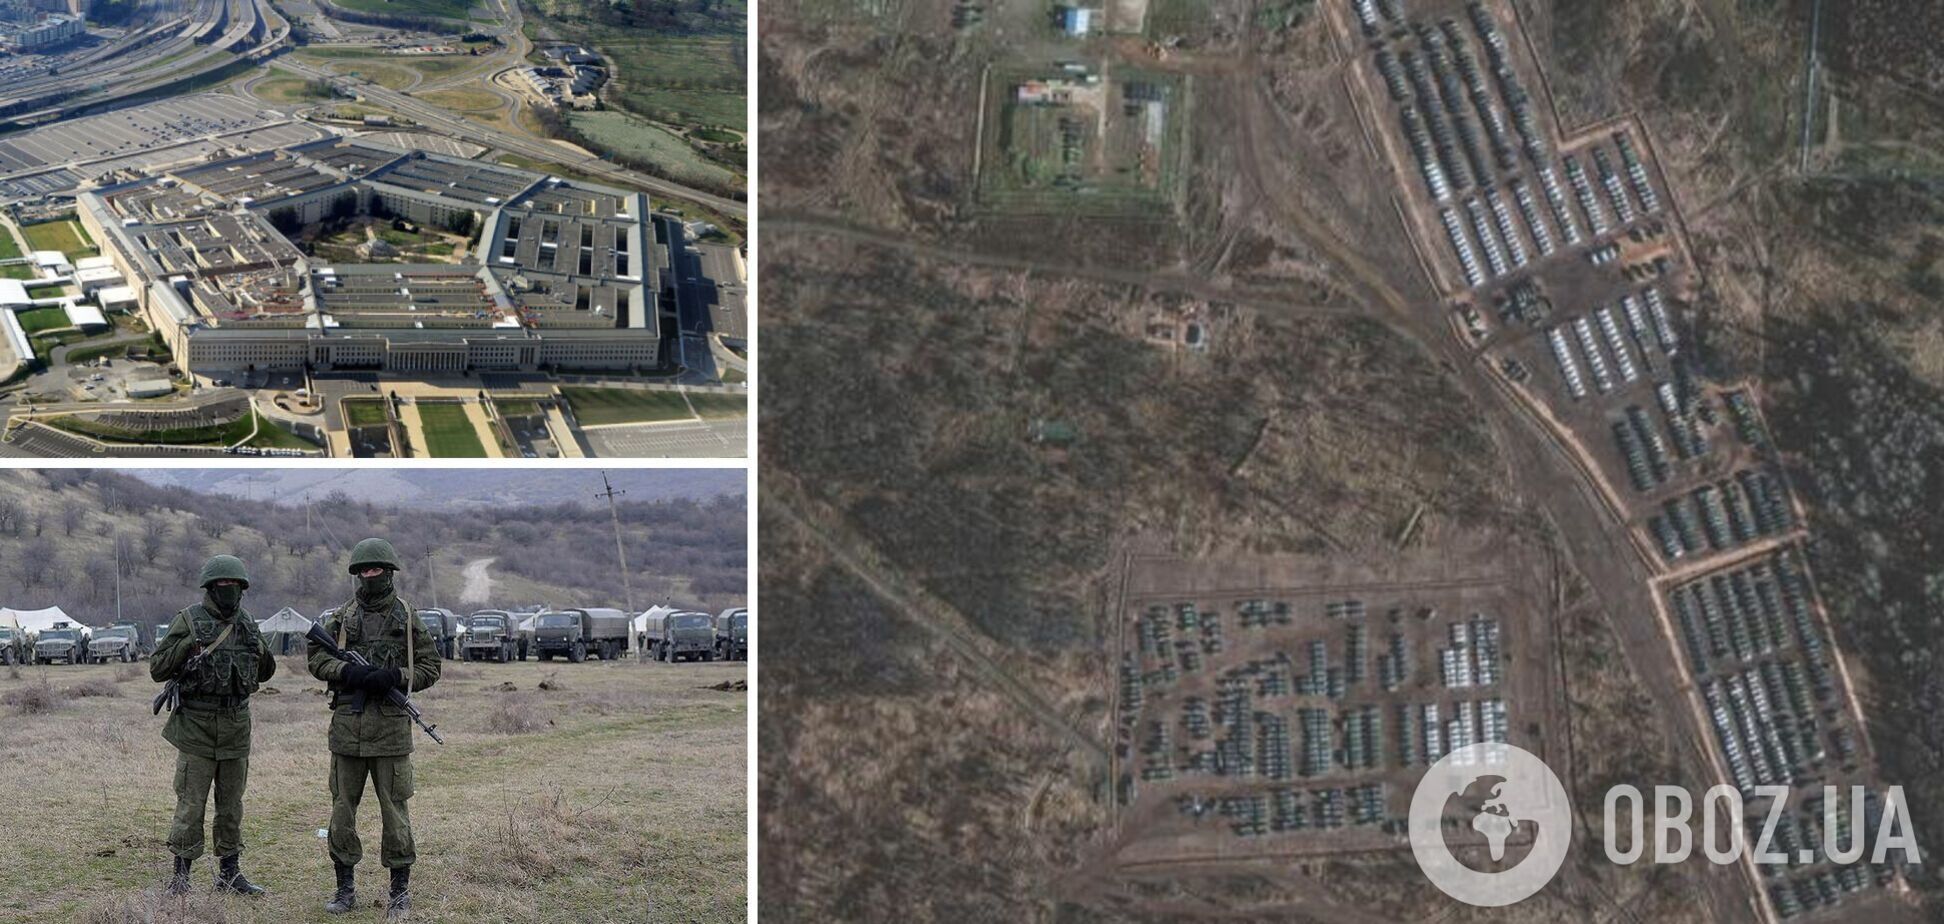 Пентагон: 100% собранных Путиным сил уже в Украине, продвижение российской армии остановилось